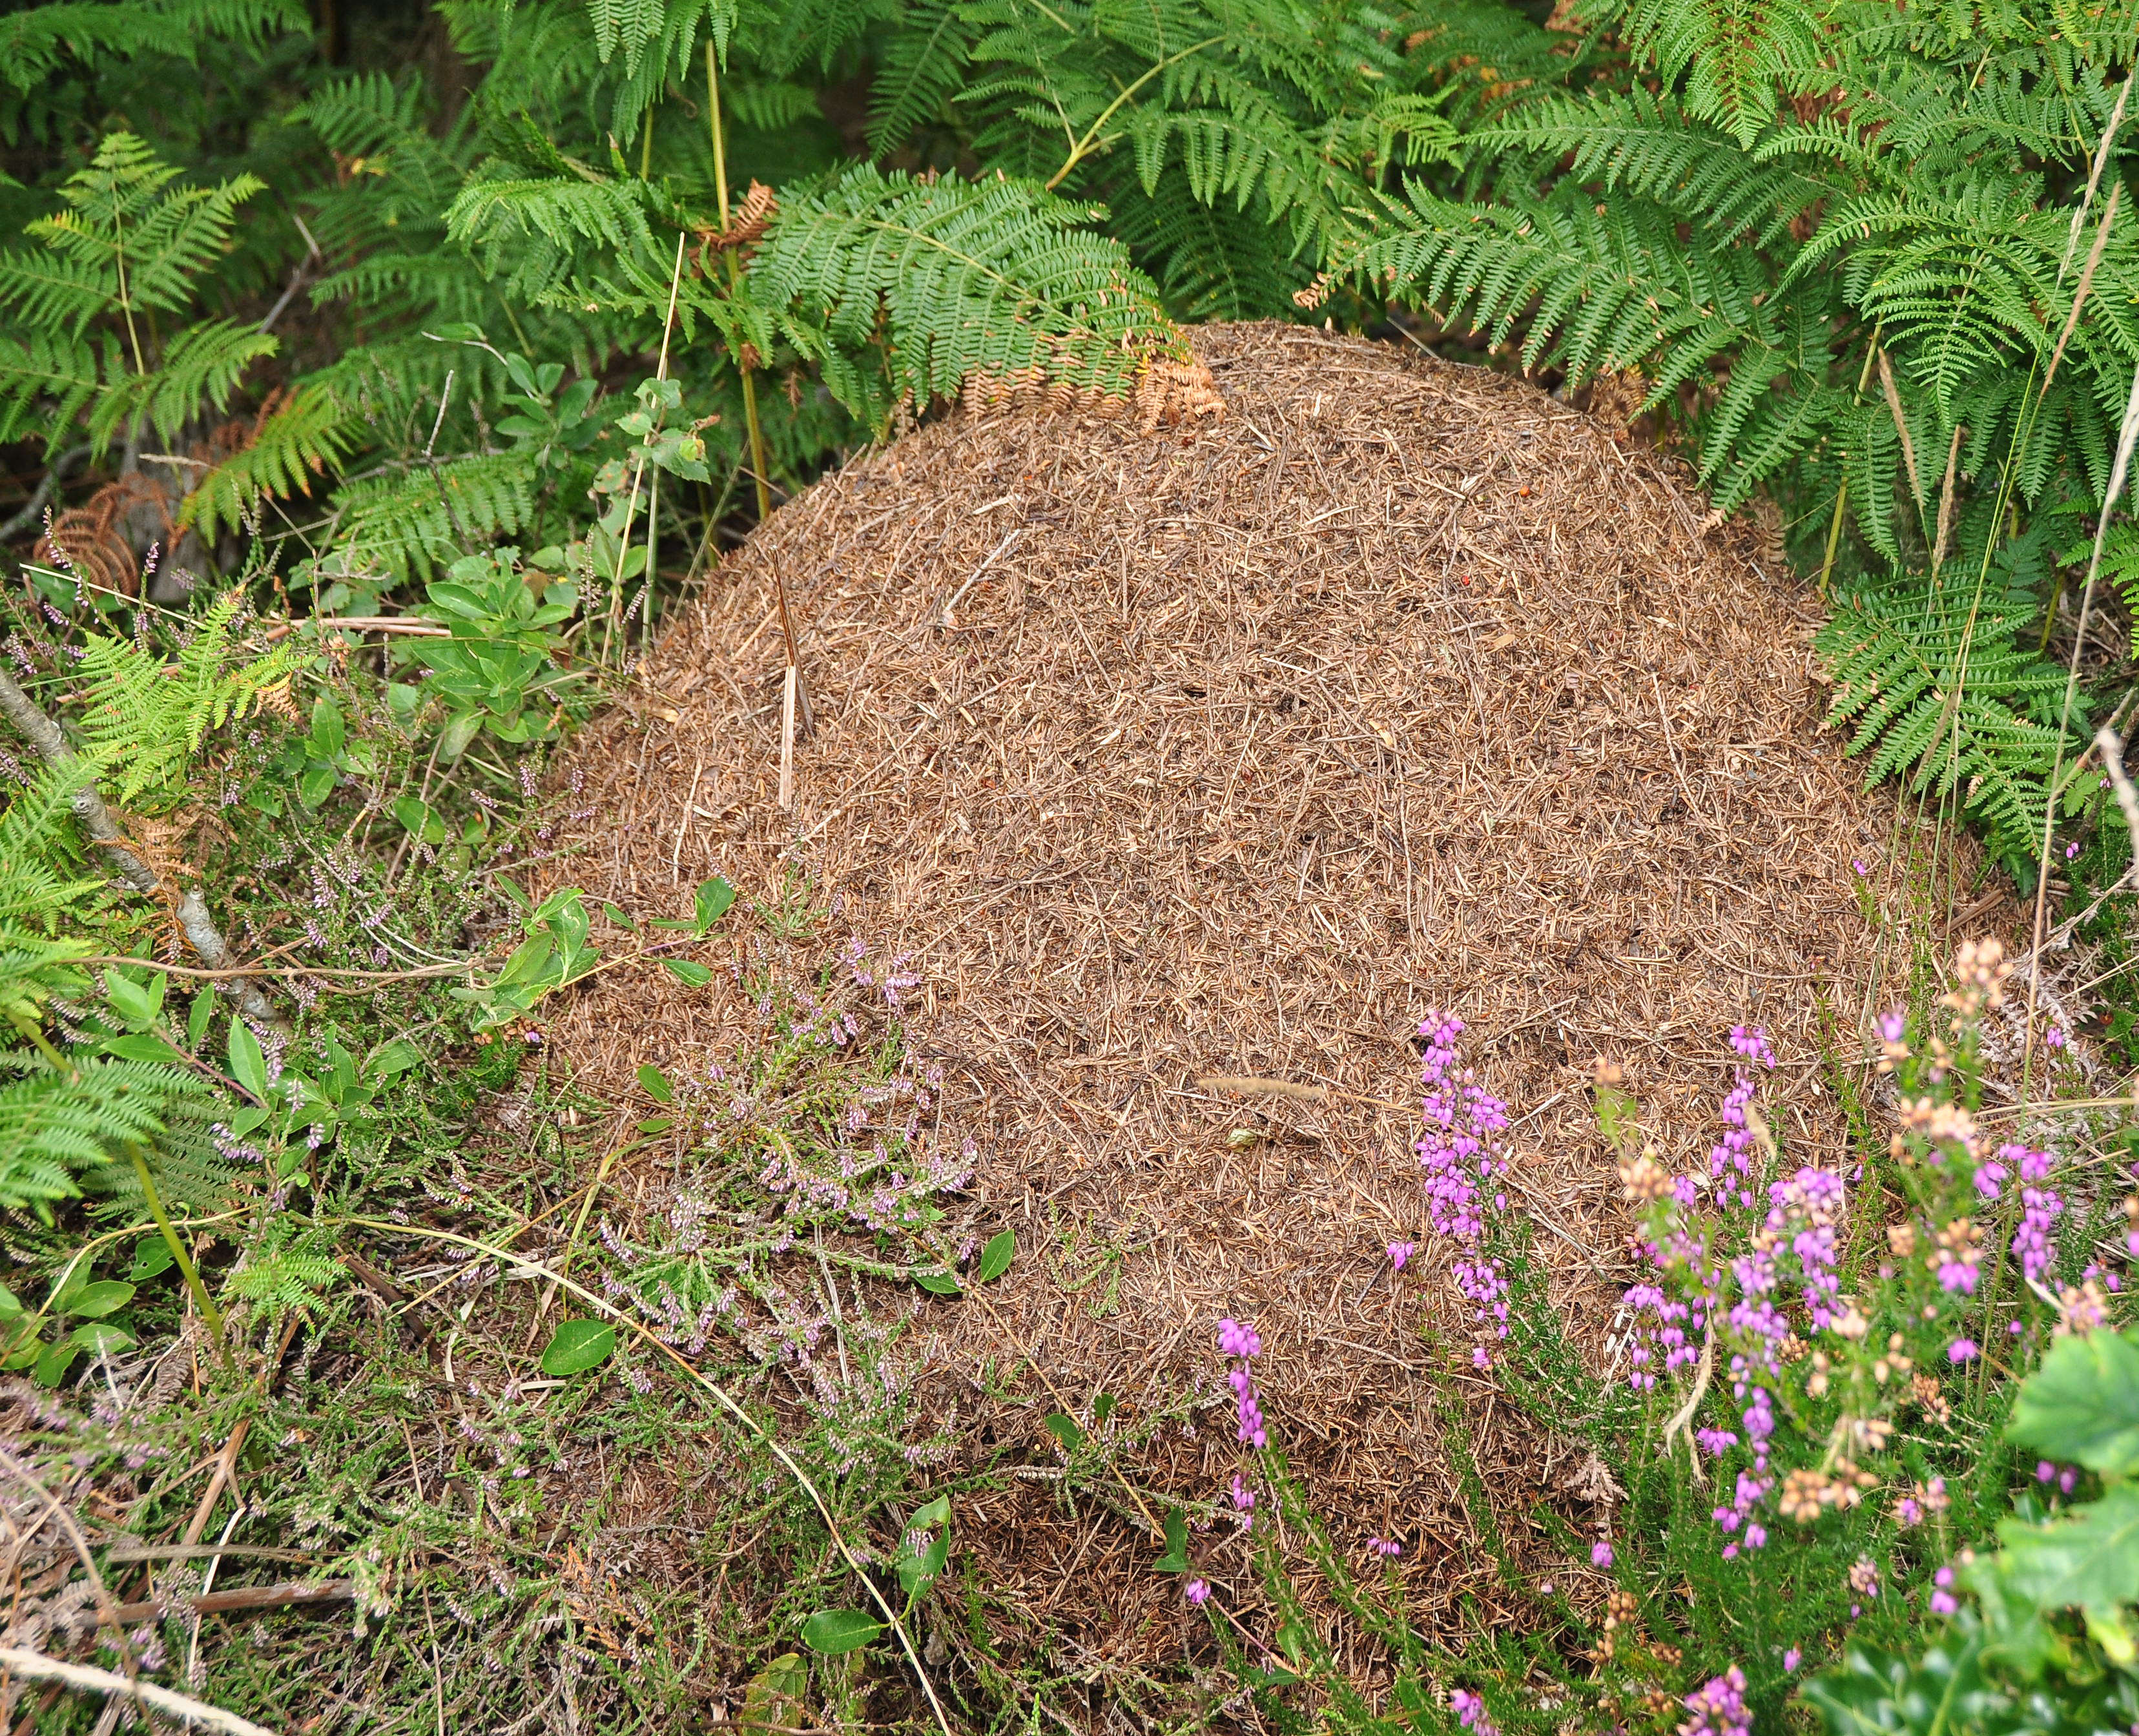 Ant nest on Trendlebere Down